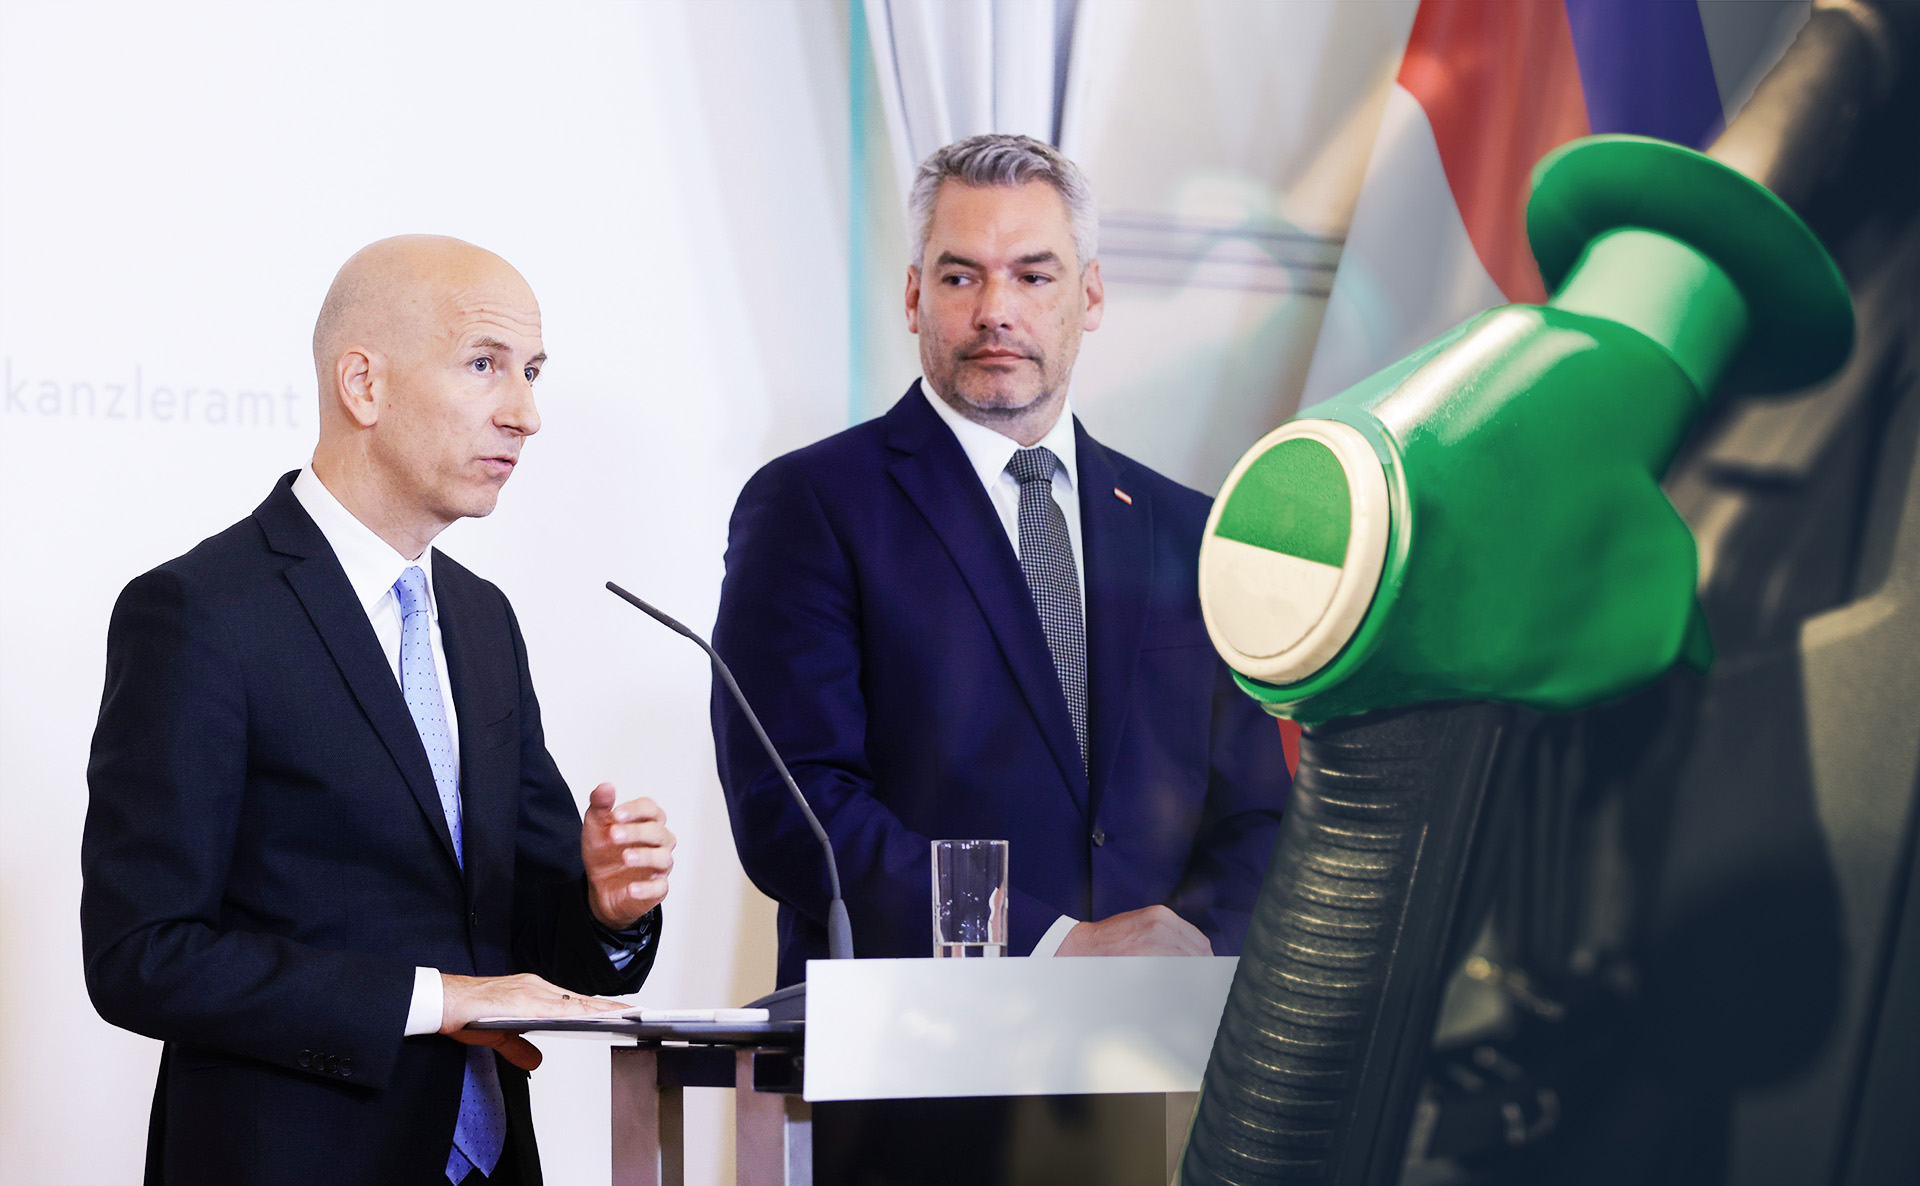 Österreicher:innen zahlten 1 Mrd. Euro zu viel für Sprit – SPÖ plant Ministeranklage gegen Kocher